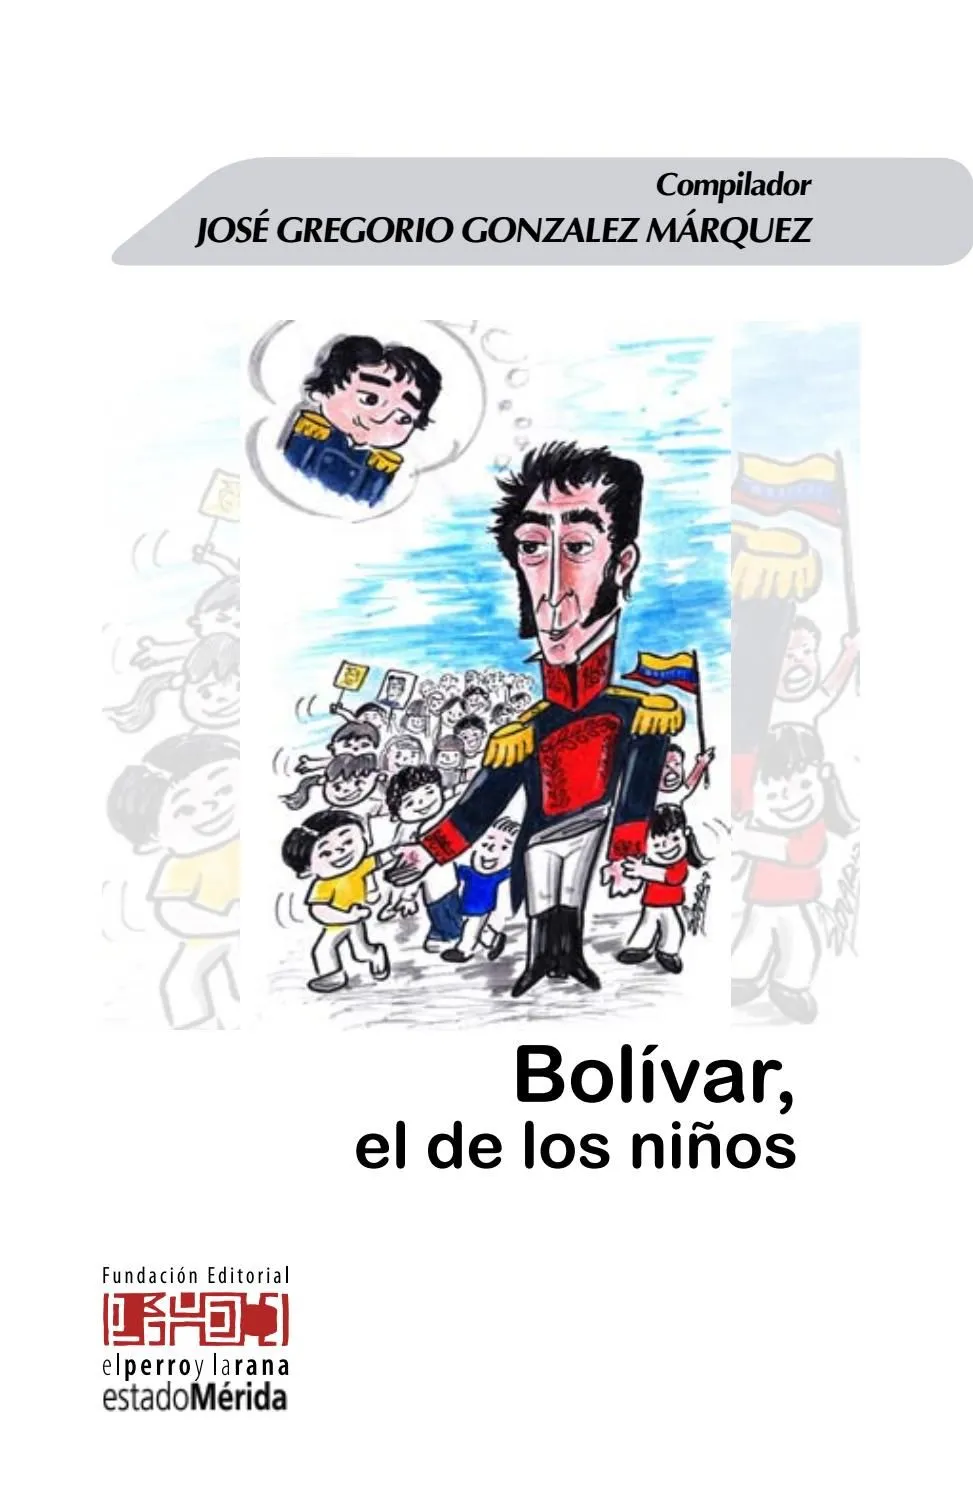 Bolivar el de los niños by Imprenta Mérida - Issuu